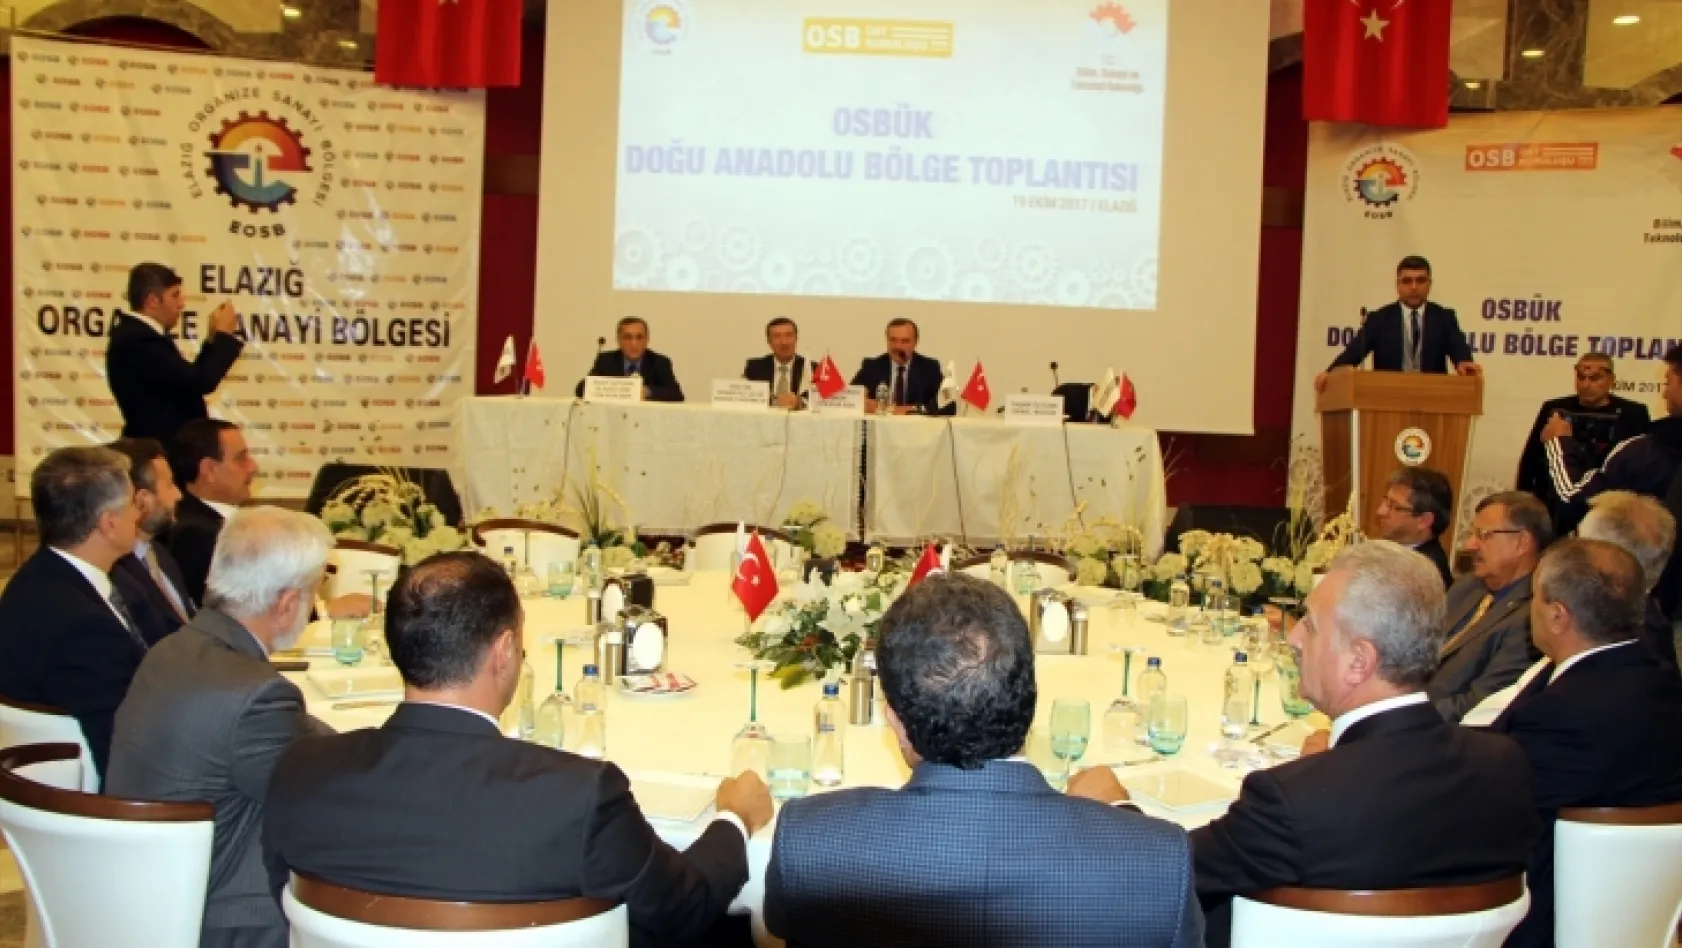 OSBÜK Doğu Anadolu Bölge Toplantısı Elazığ'da gerçekleştirildi